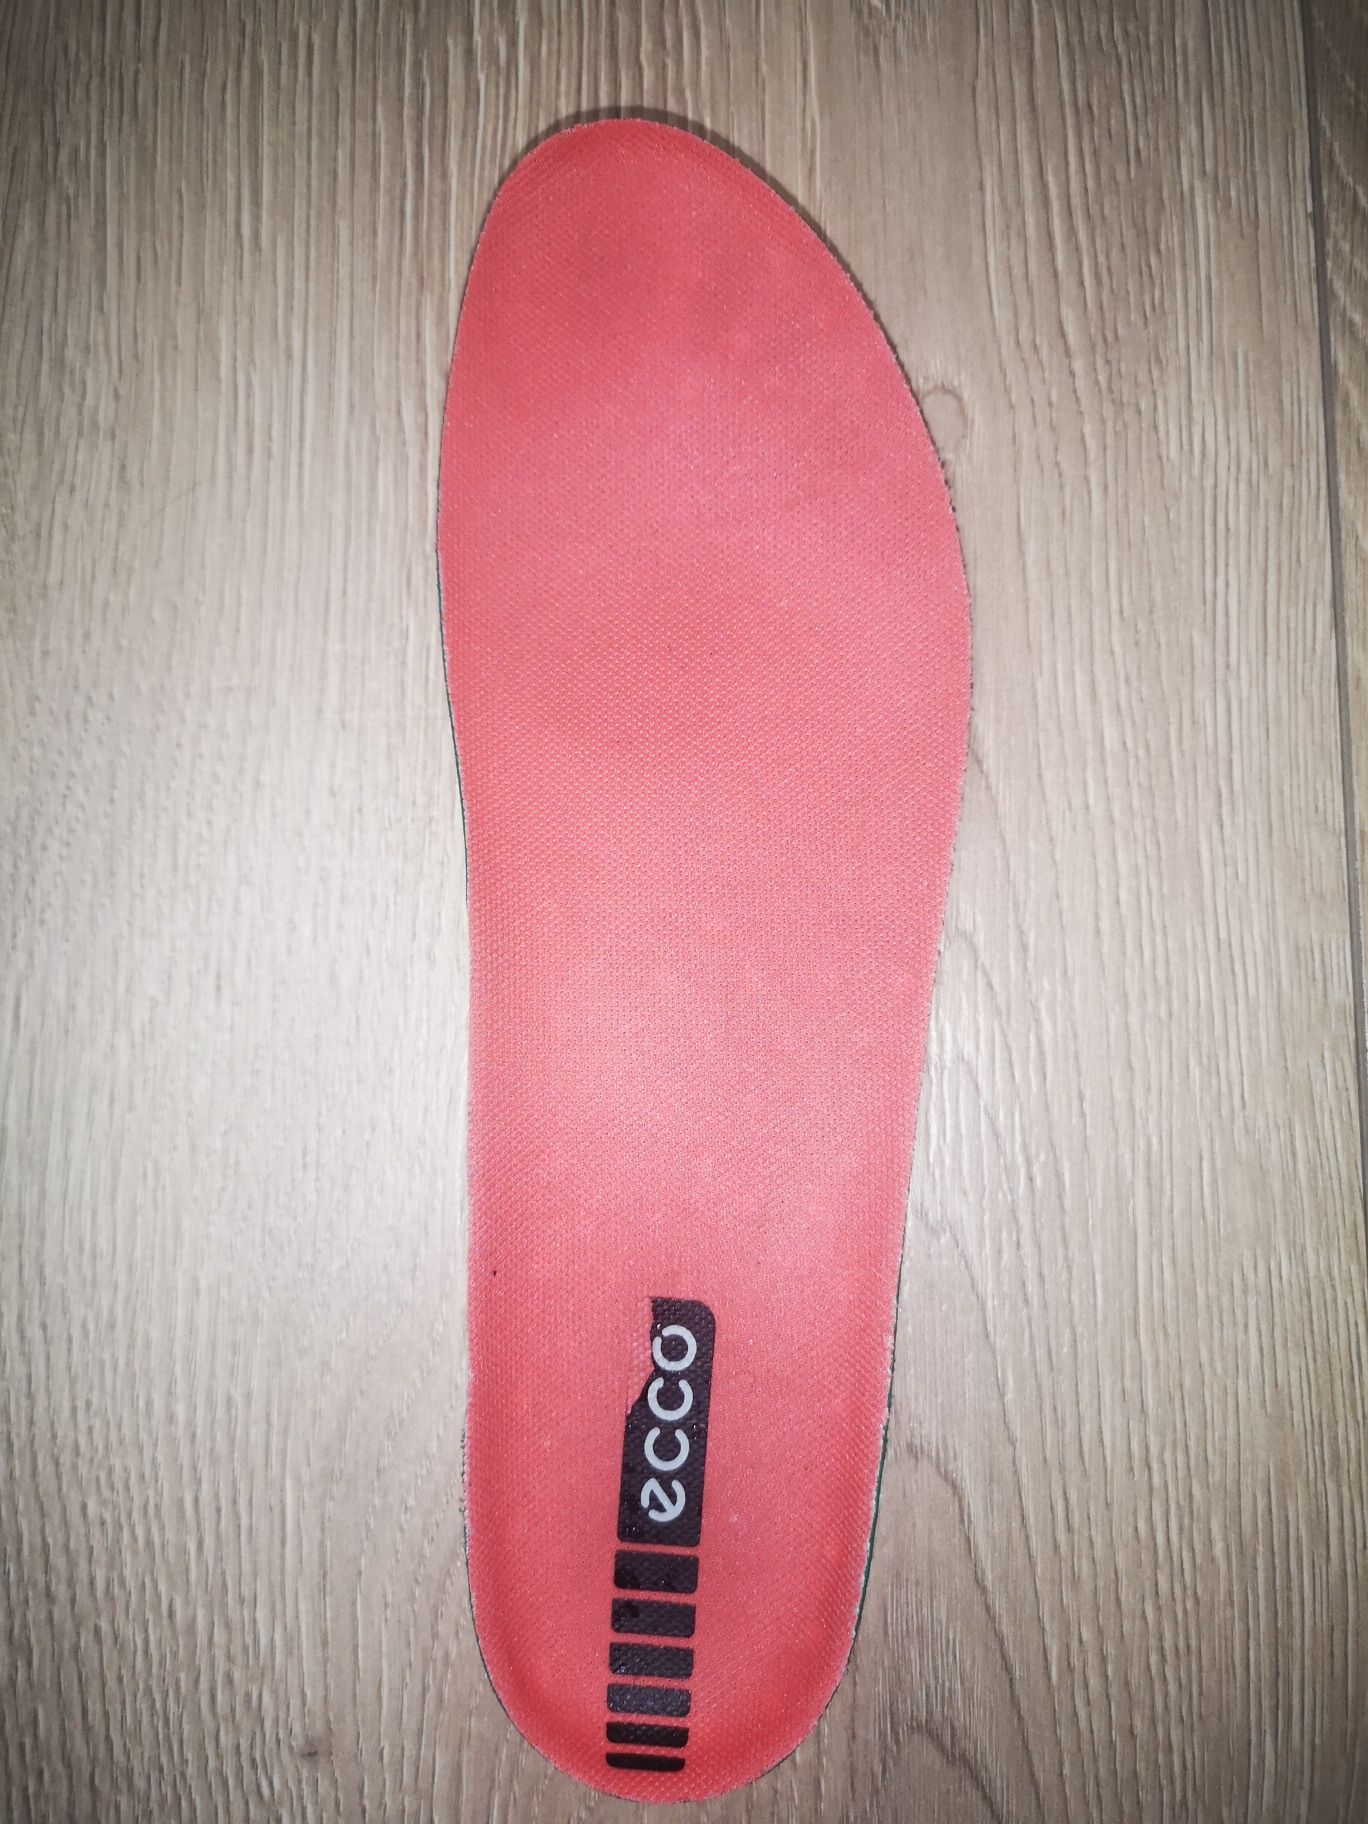 Жіночі кросівки ECCO, 39 розмір.